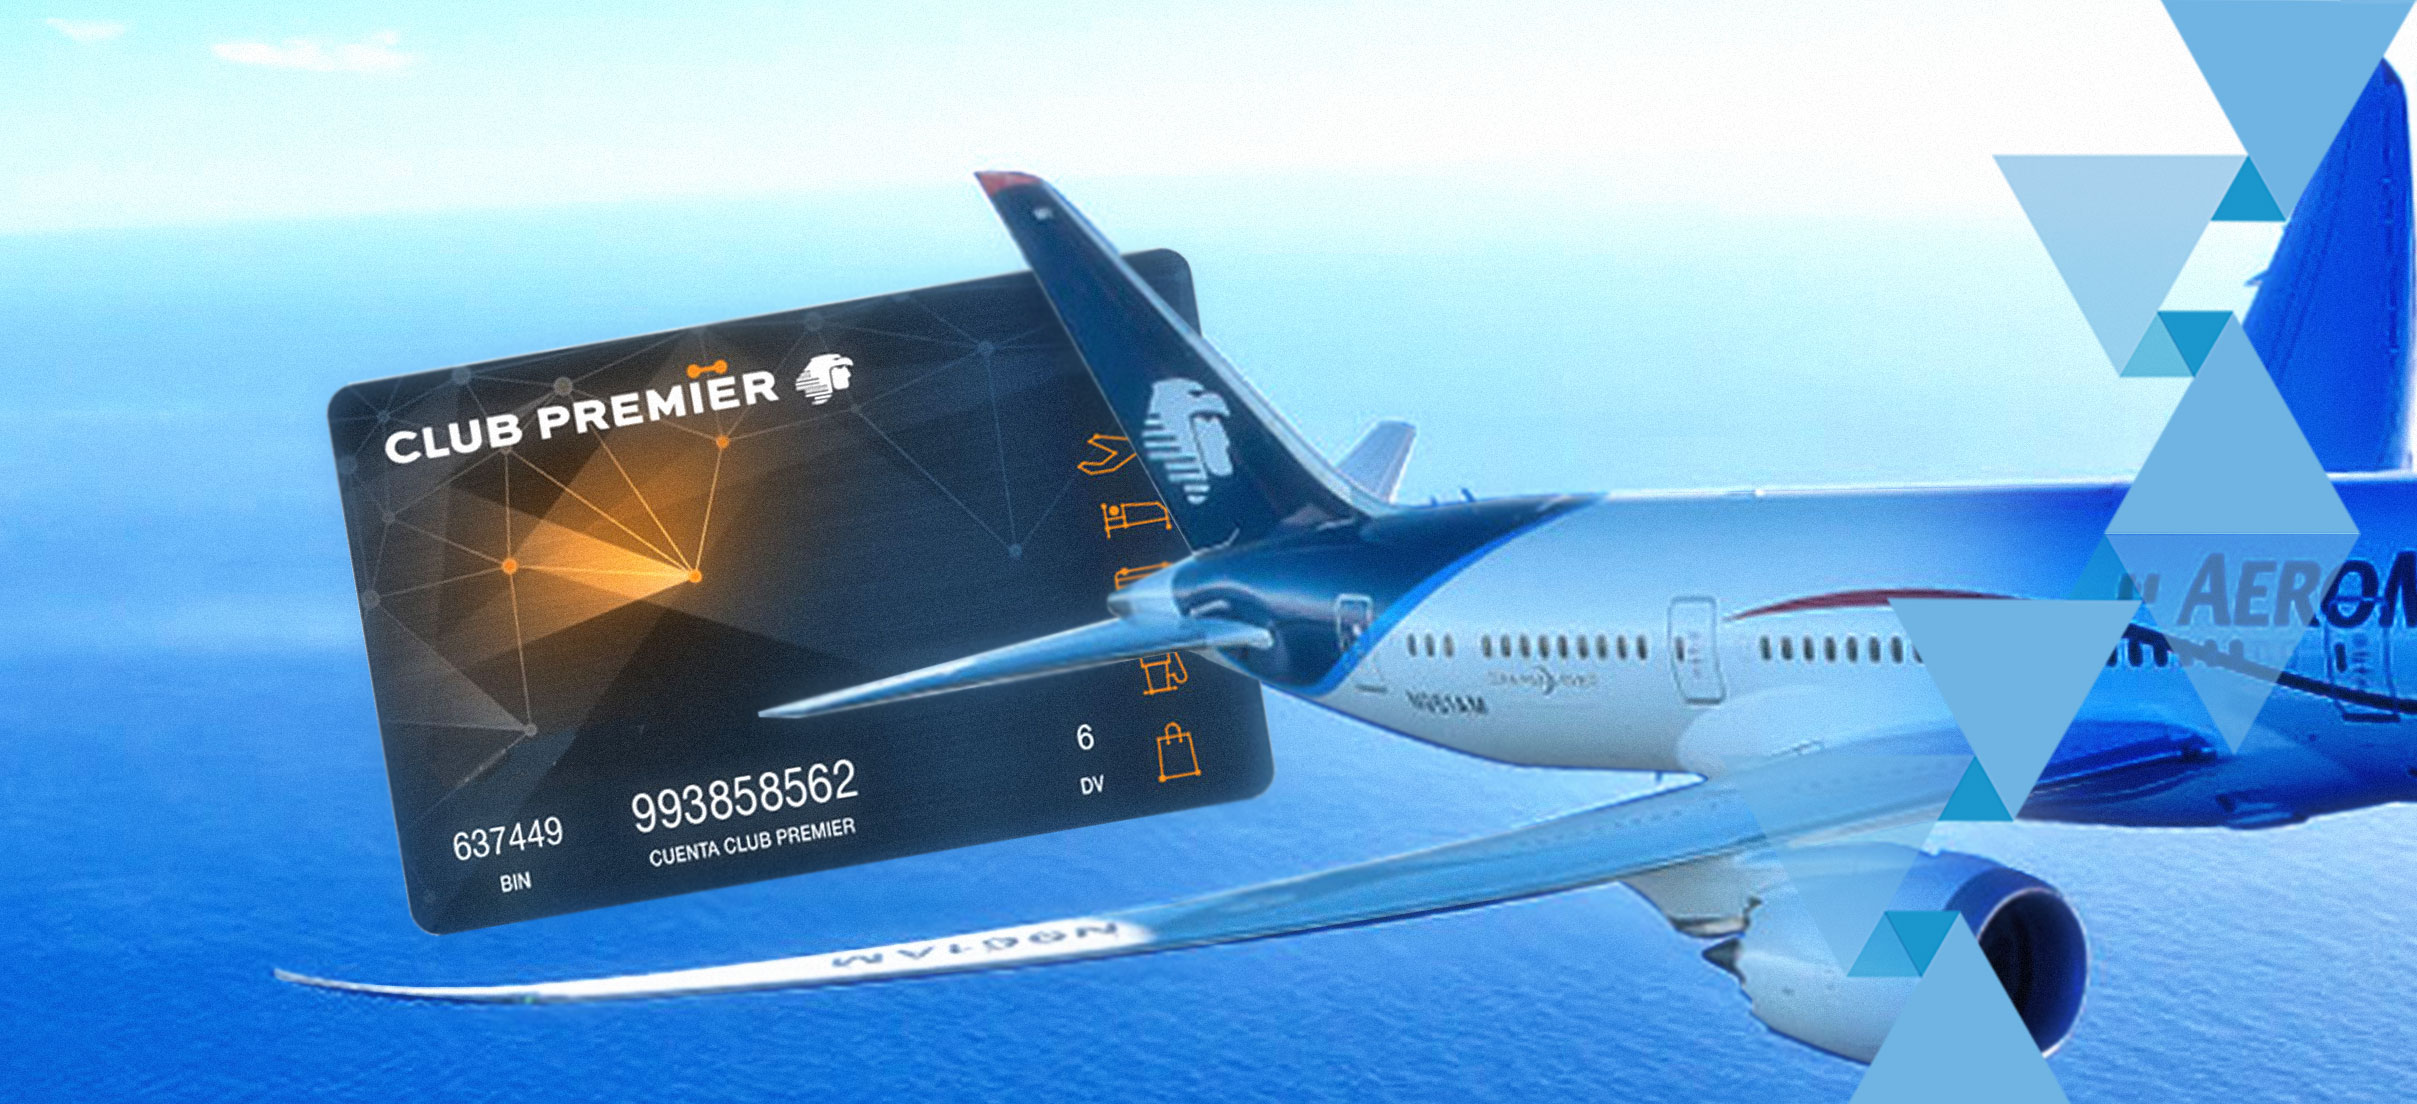 Club Premier busca nuevos clientes en el extranjero | Aviación 21